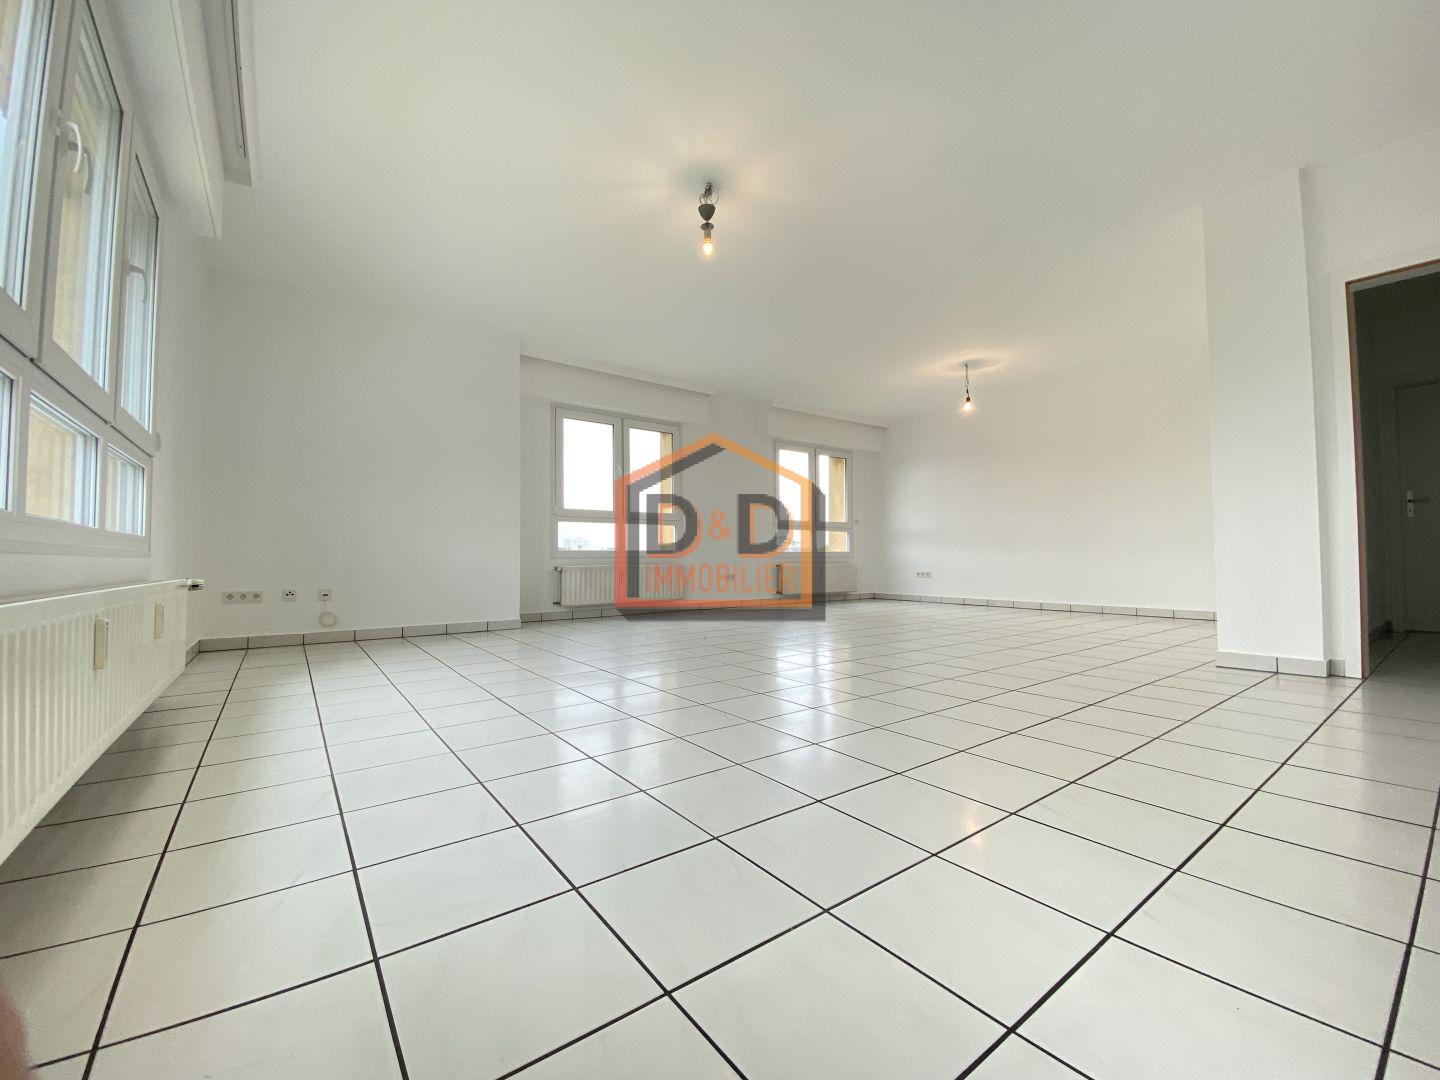 Appartement à Howald, 100 m², 2 chambres, 1 salle de bain, 1 garage, 1 700 €/mois